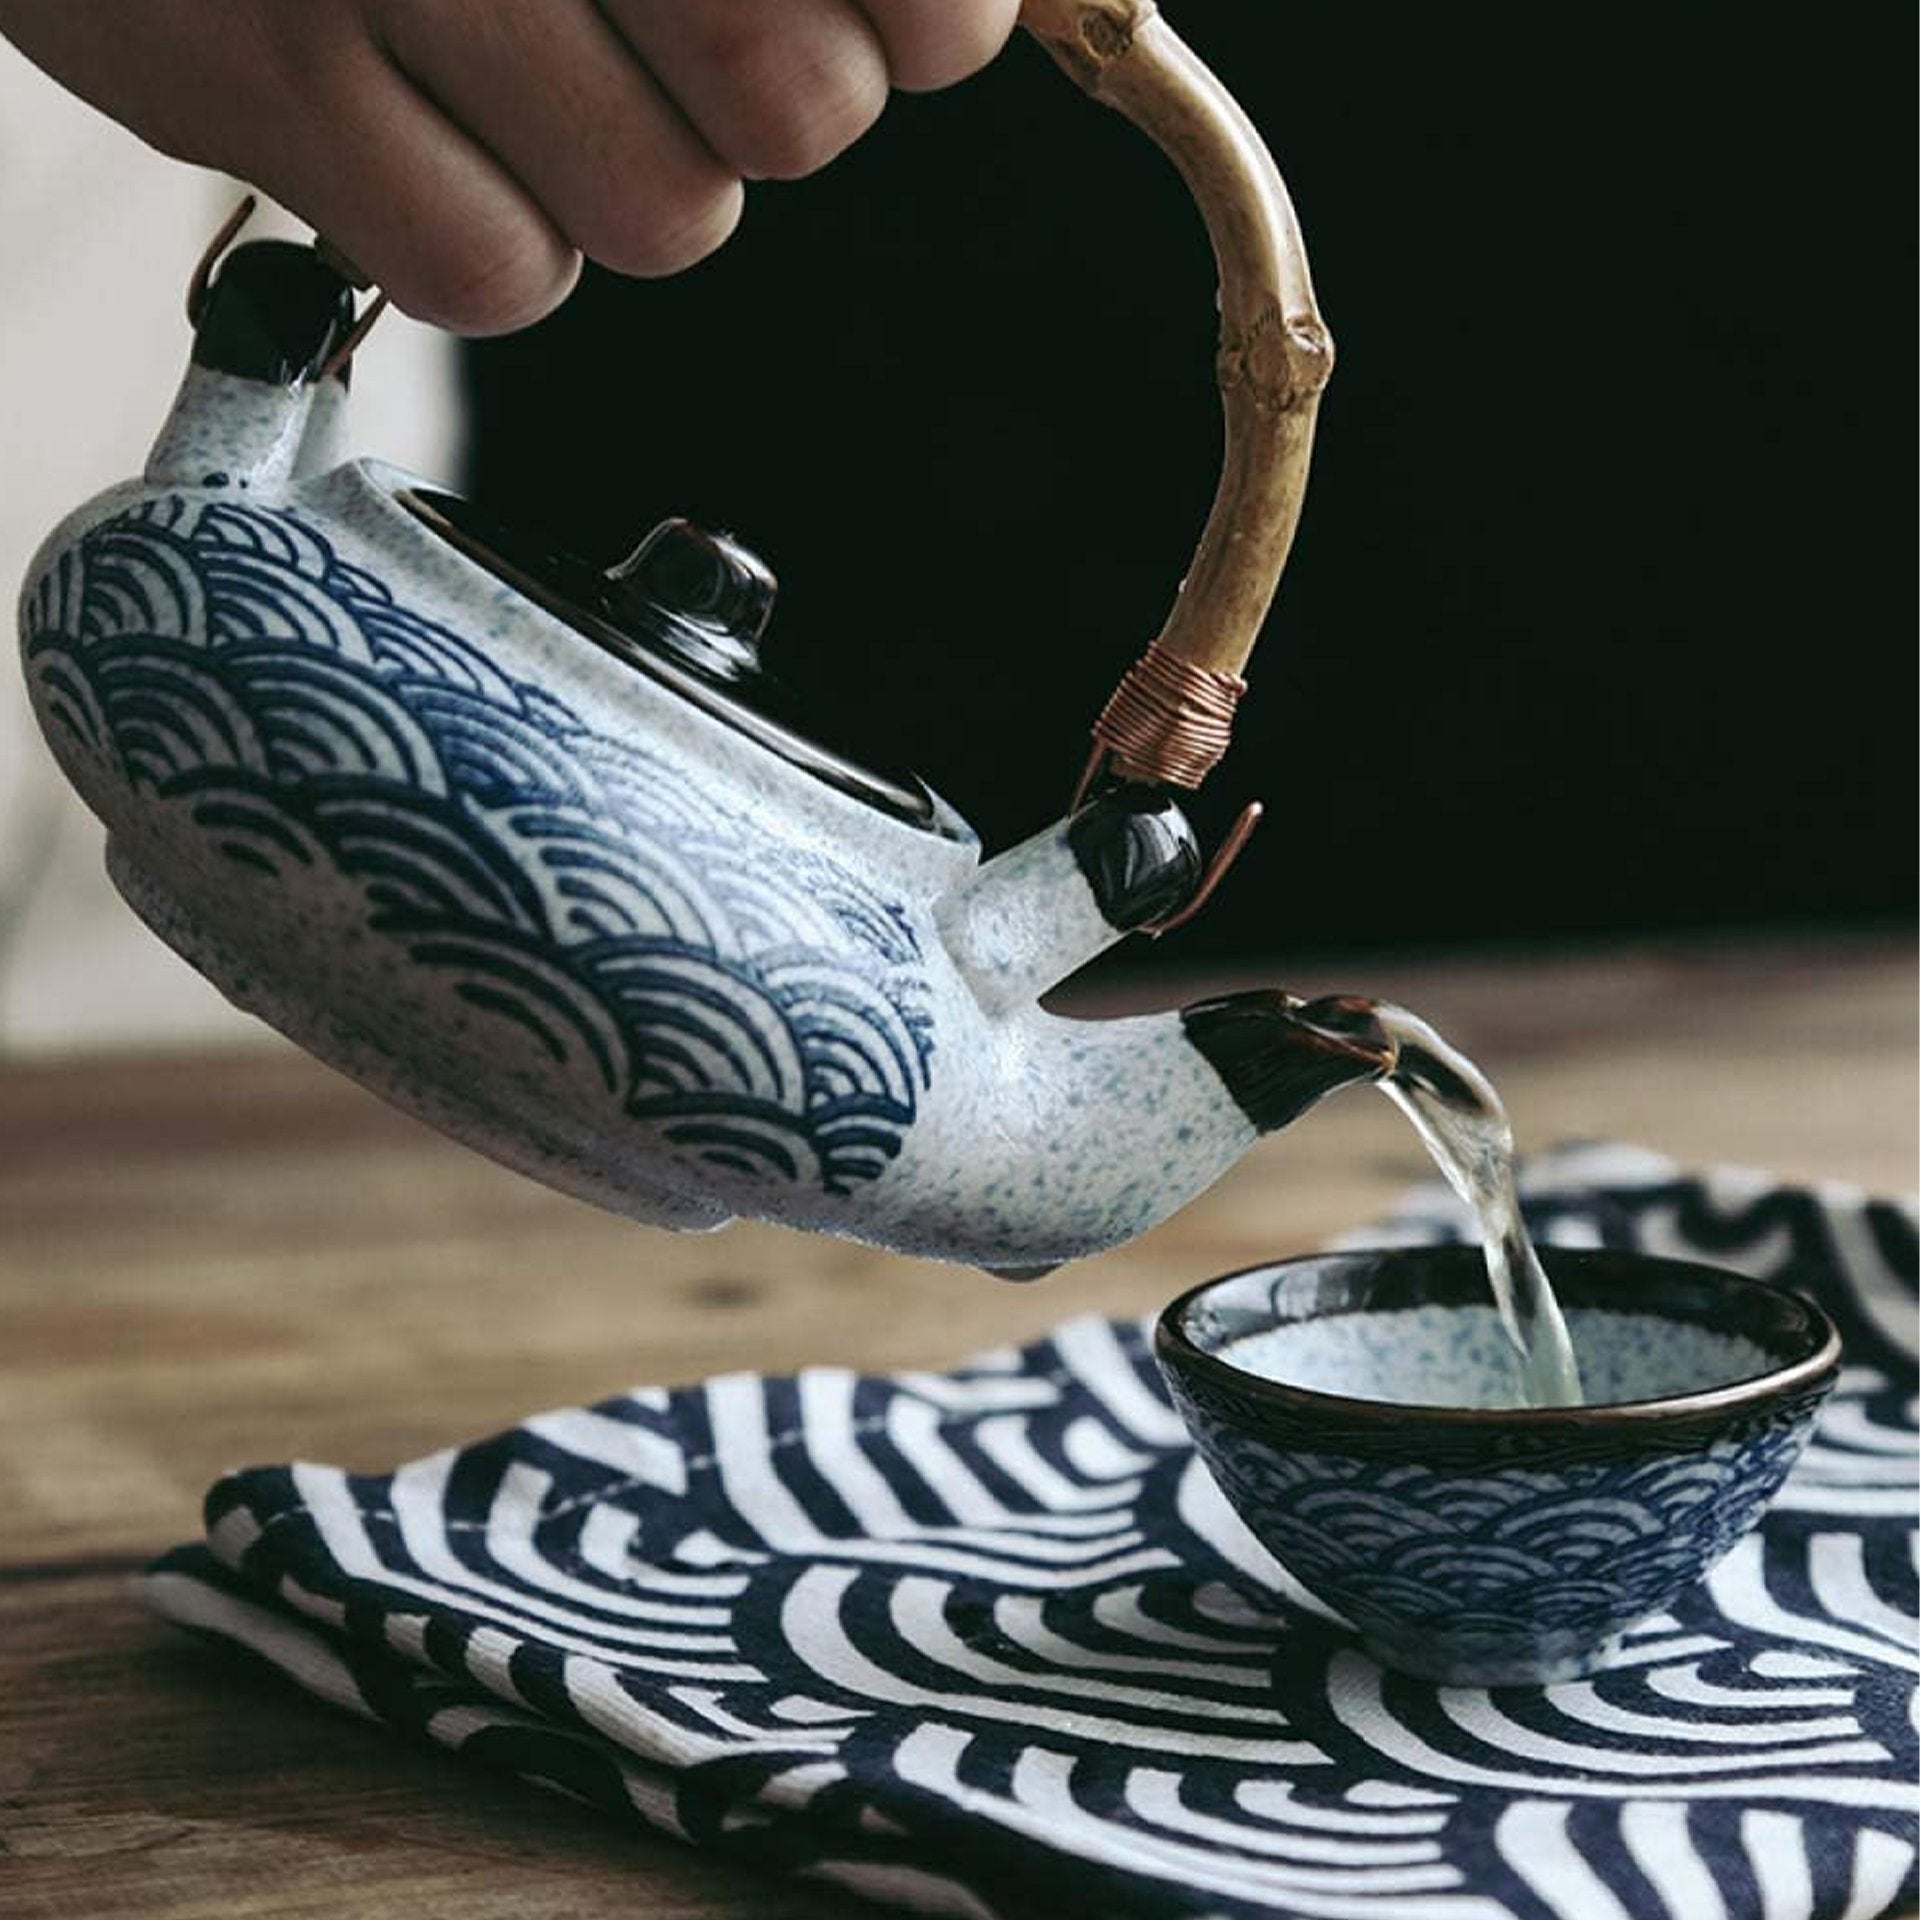 Japanese Retro Ceramic Tea Set